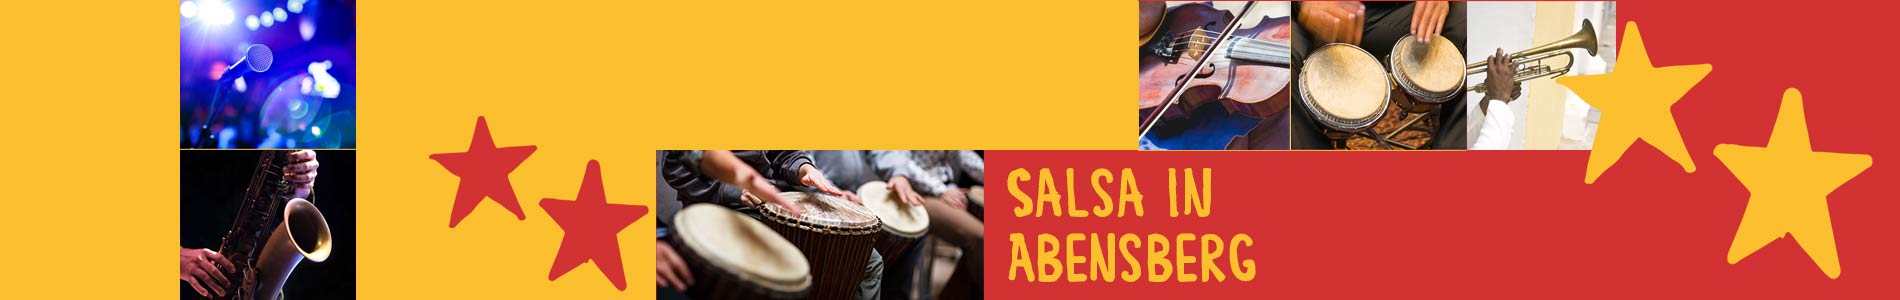 Salsa in Abensberg – Salsa lernen und tanzen, Tanzkurse, Partys, Veranstaltungen